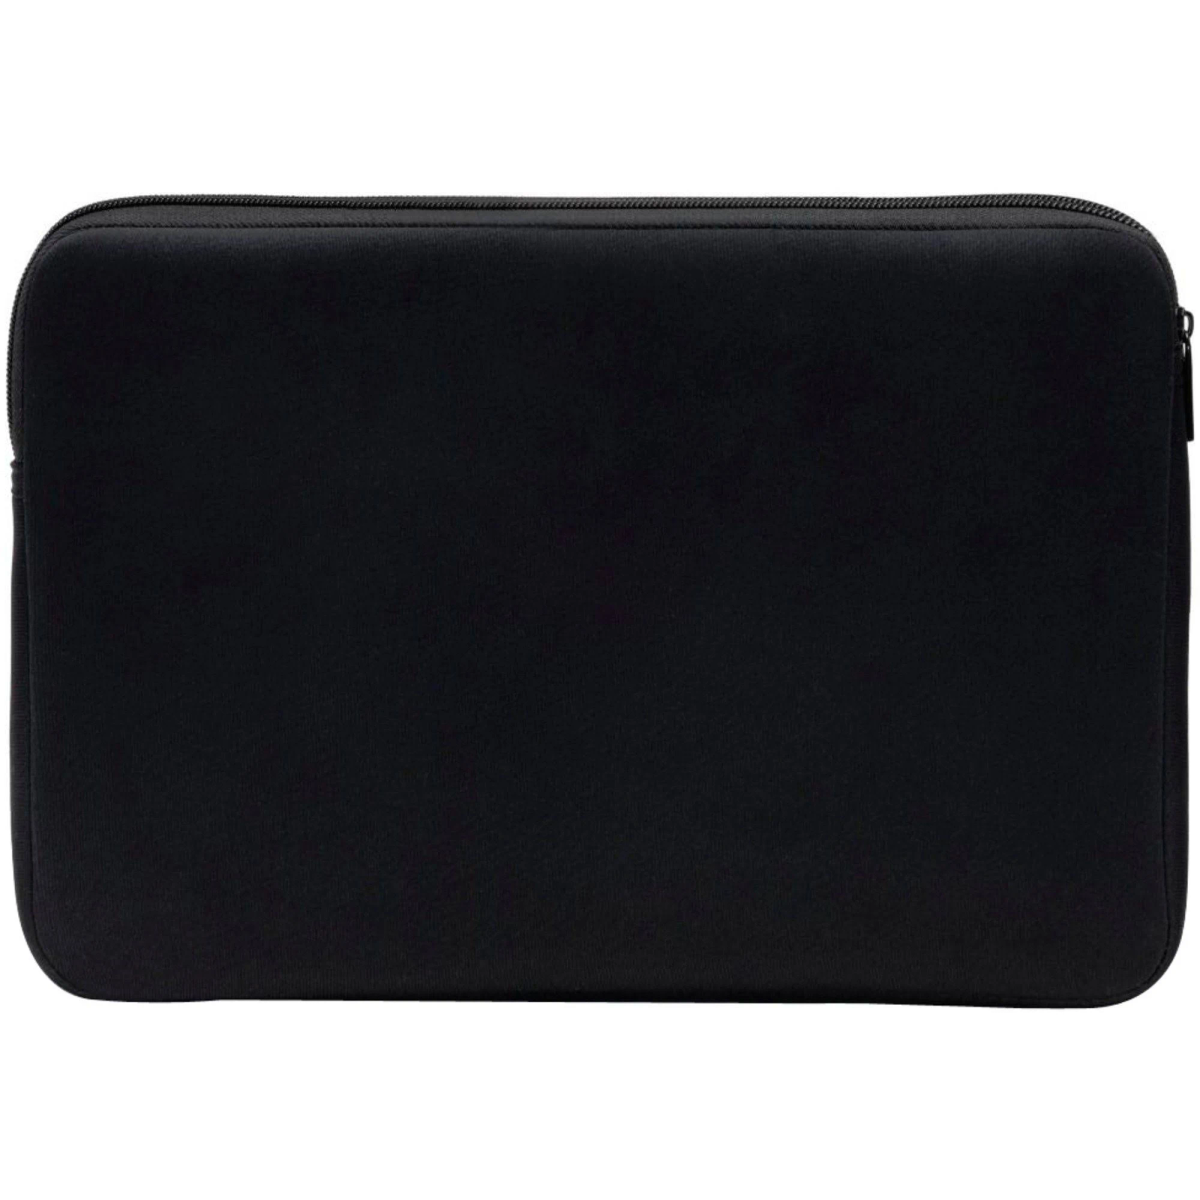 Sleeve Universal D31189 16-17.3 PERFECT BLACK Schwarz DICOTA SKIN Neopren, Notebooktasche für